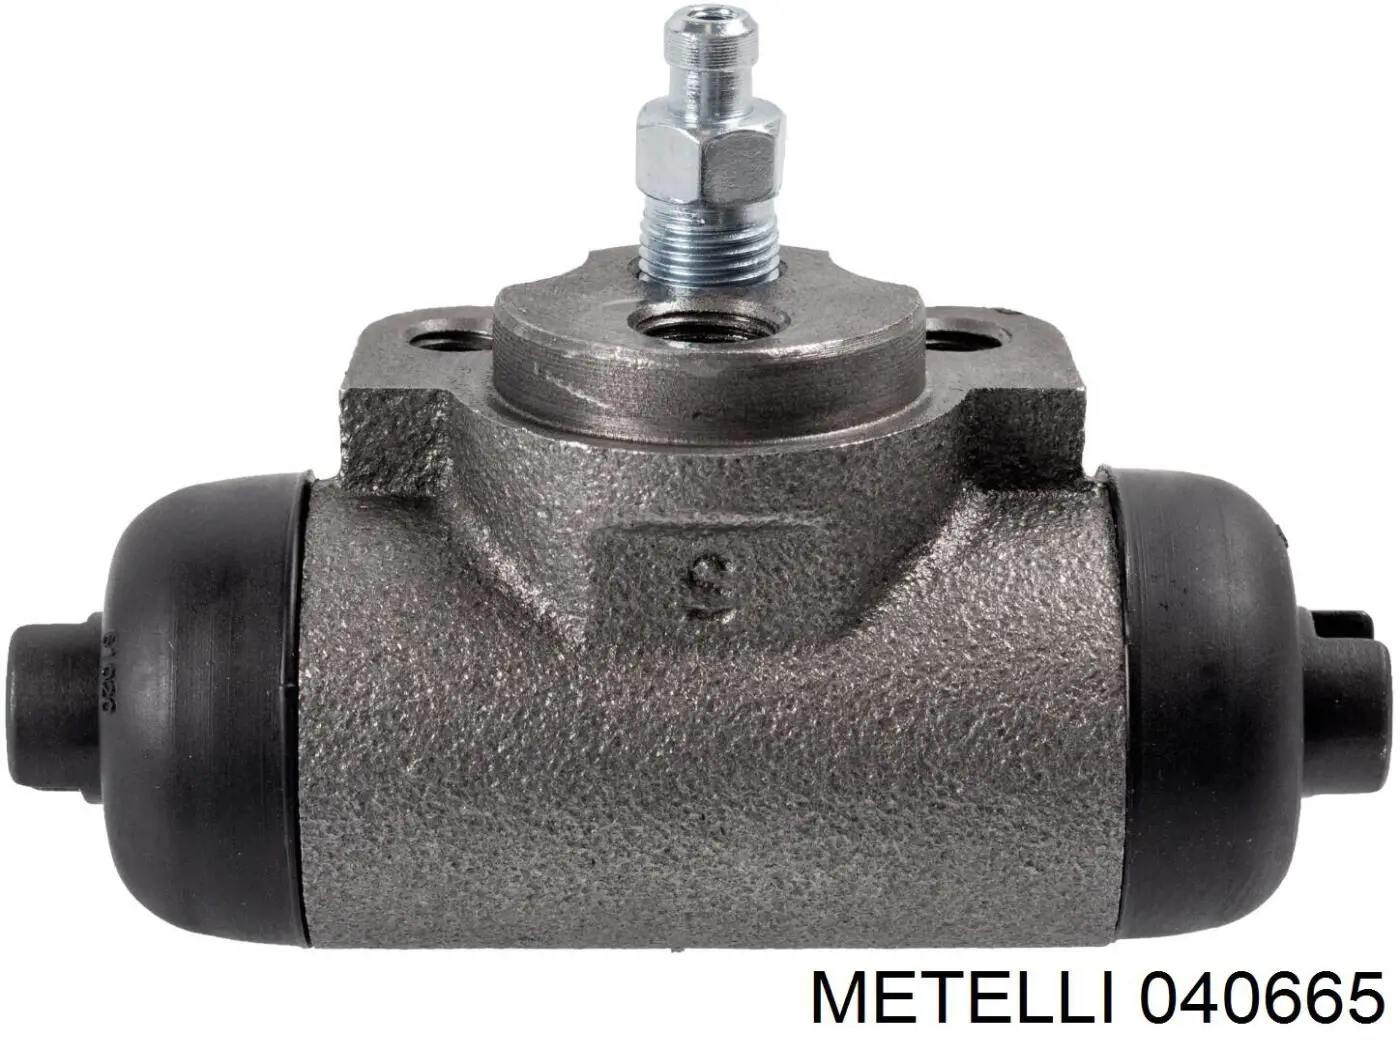 04-0665 Metelli цилиндр тормозной колесный рабочий задний